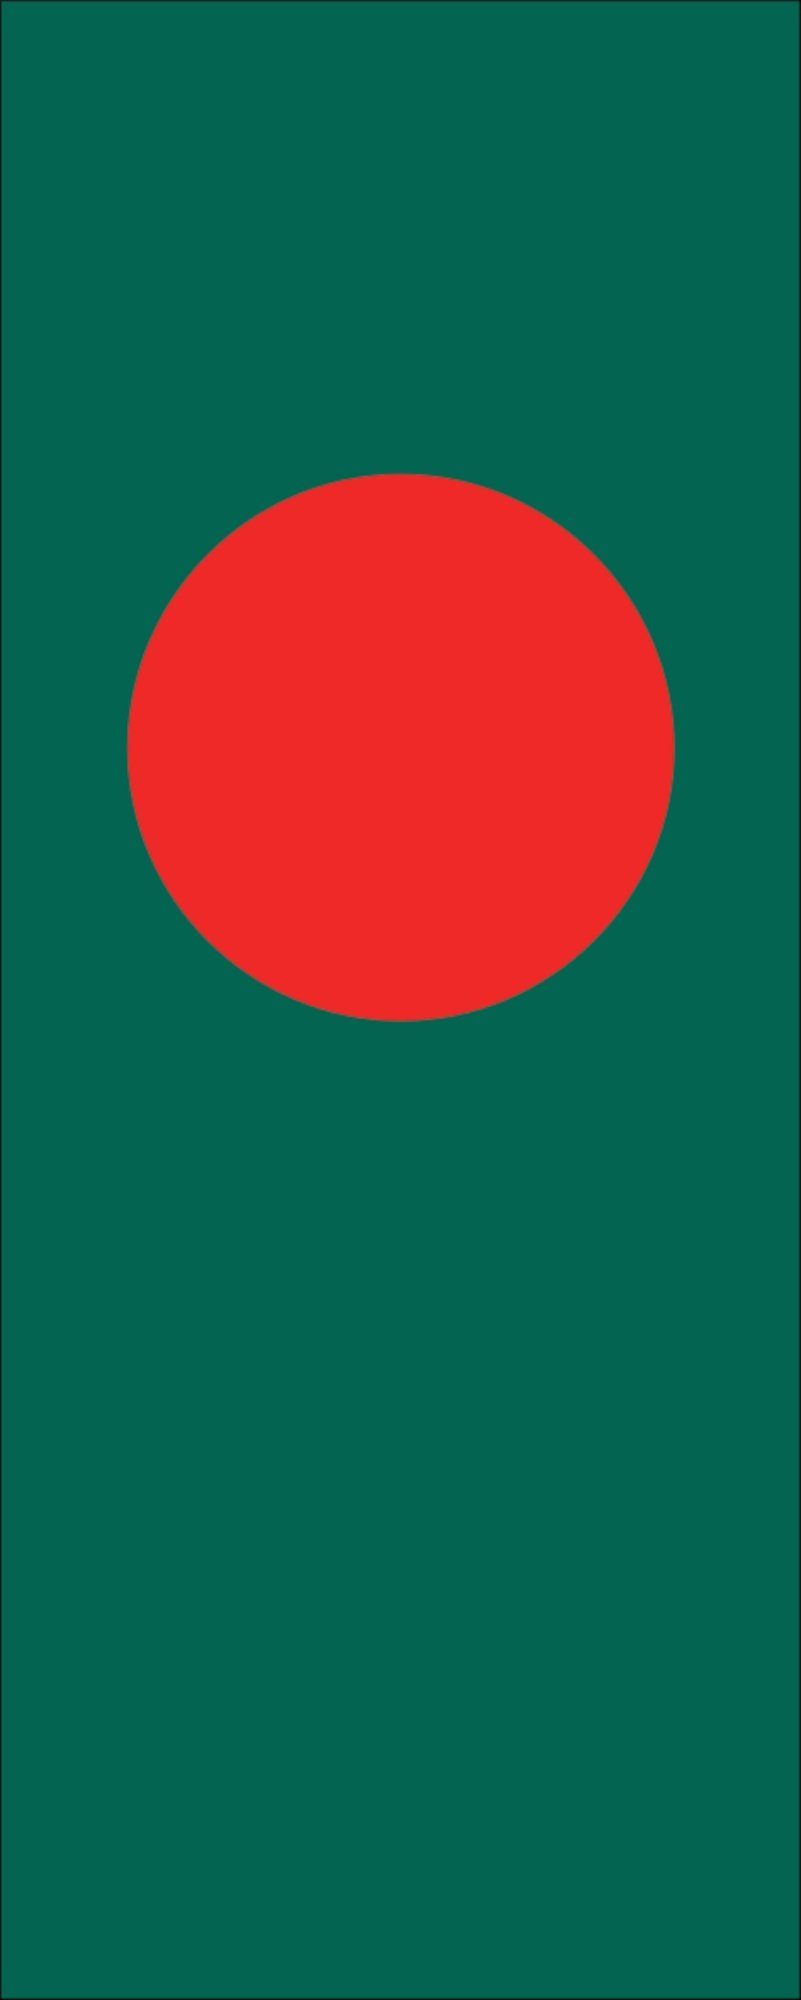 flaggenmeer Flagge Flagge Bangladesch 110 g/m² Hochformat